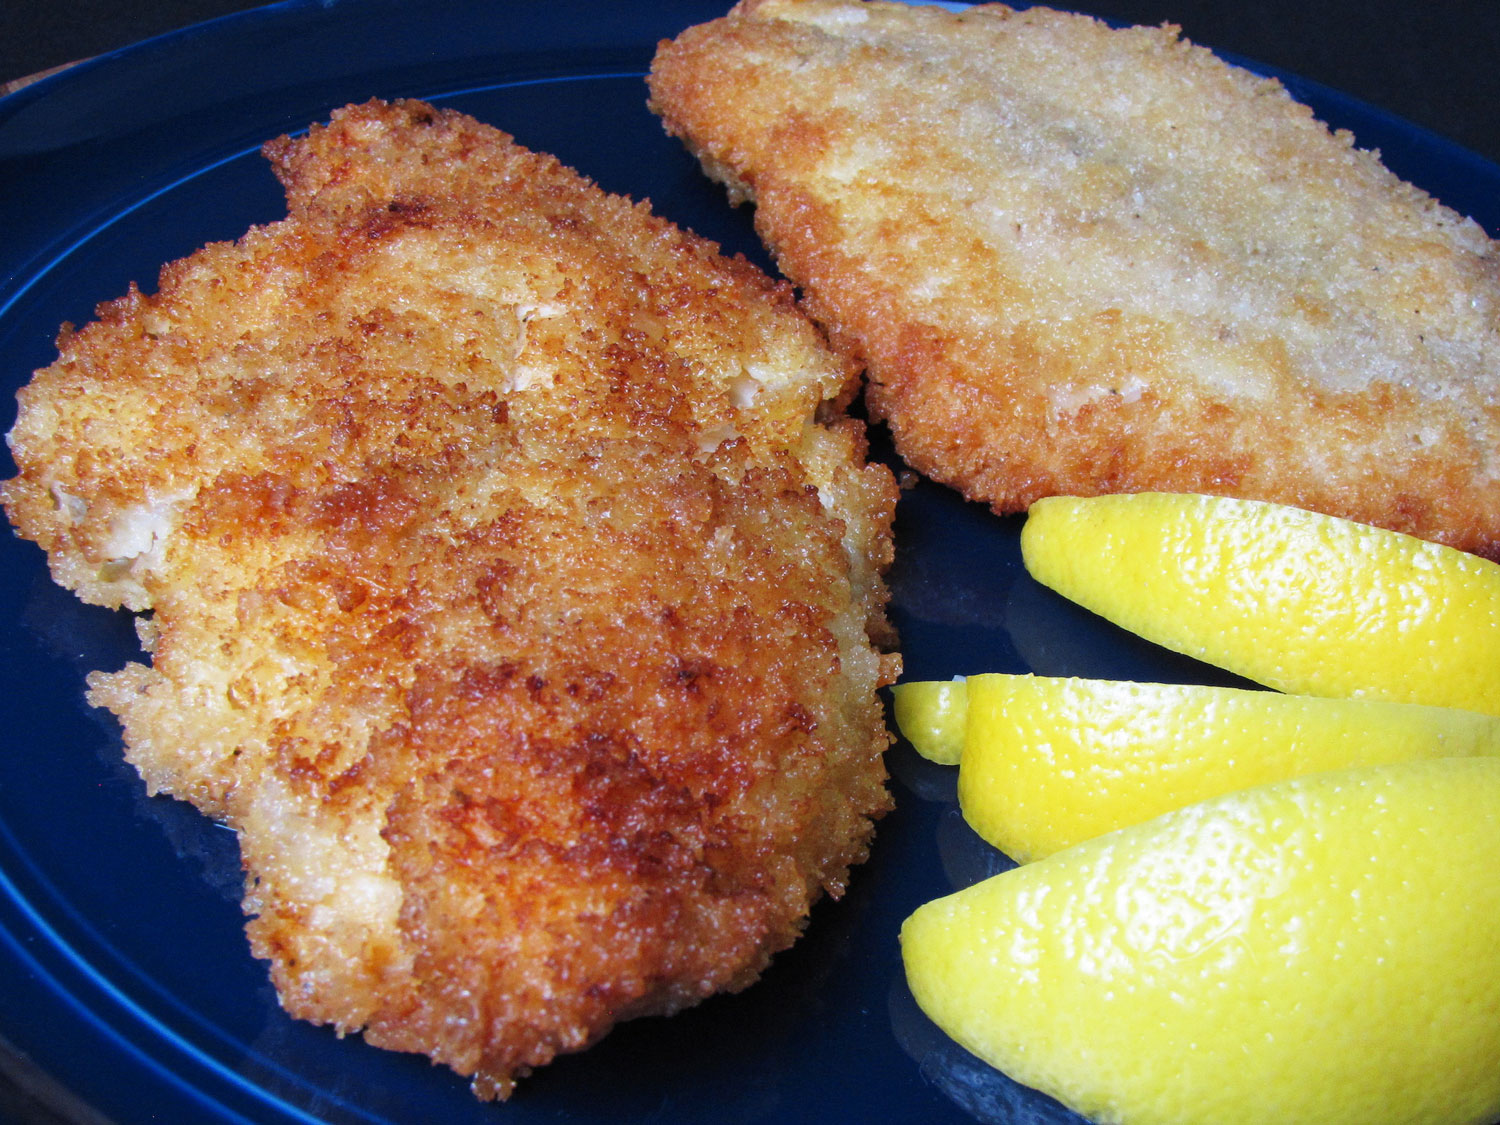 Crispy Fried Catfish